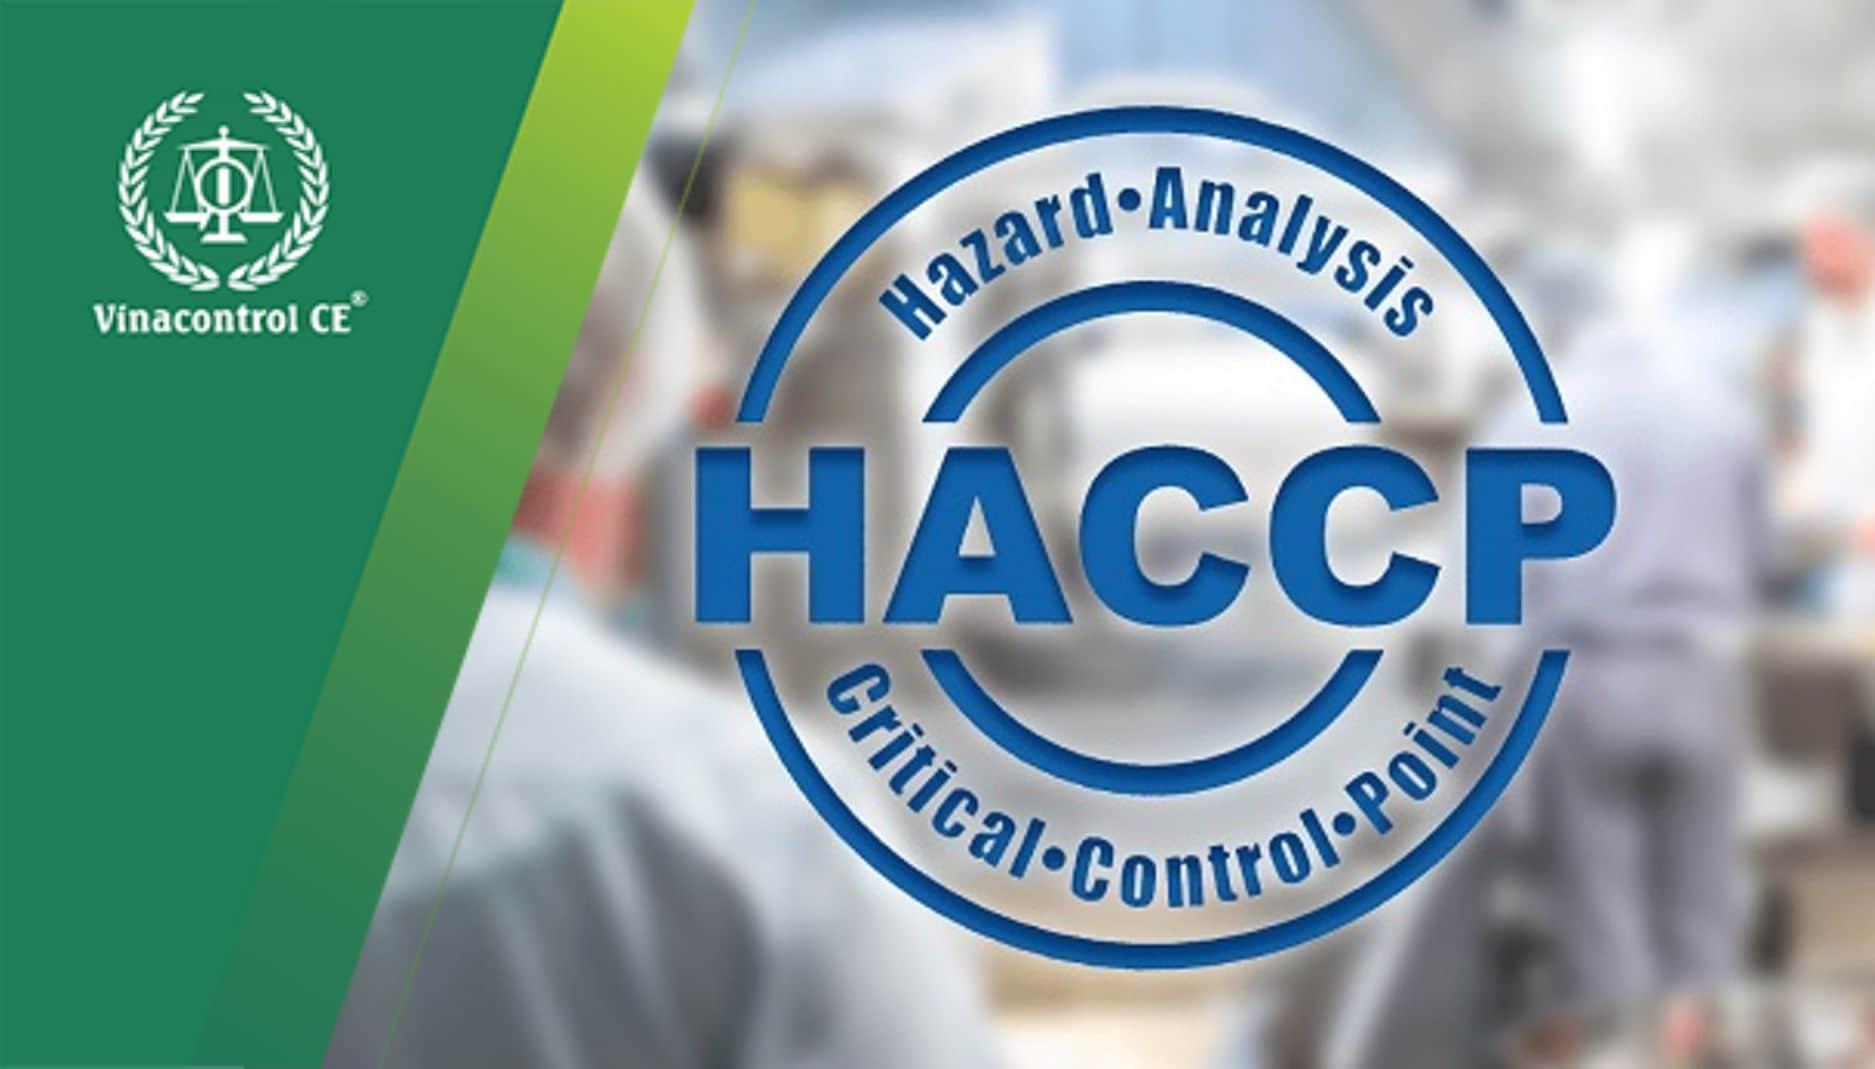 Tiêu chuẩn HACCP - Hệ thống phân tích mối nguy và kiểm soát điểm tới hạn